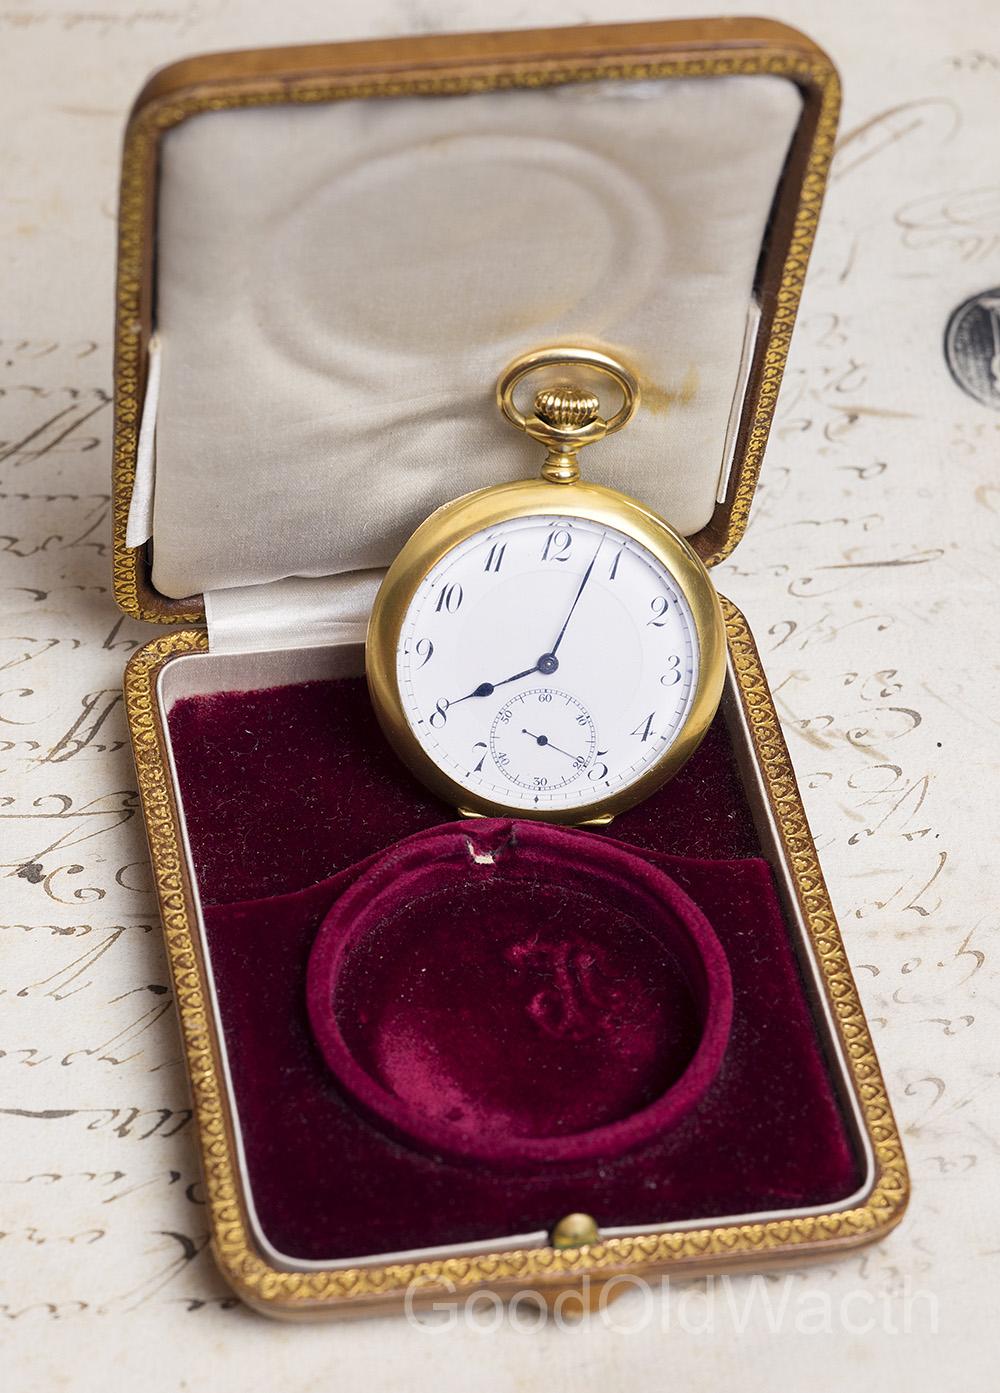 Commemorative BULLETIN DE MARCHE CHRONOMETER Gold Antique Pocket Watch